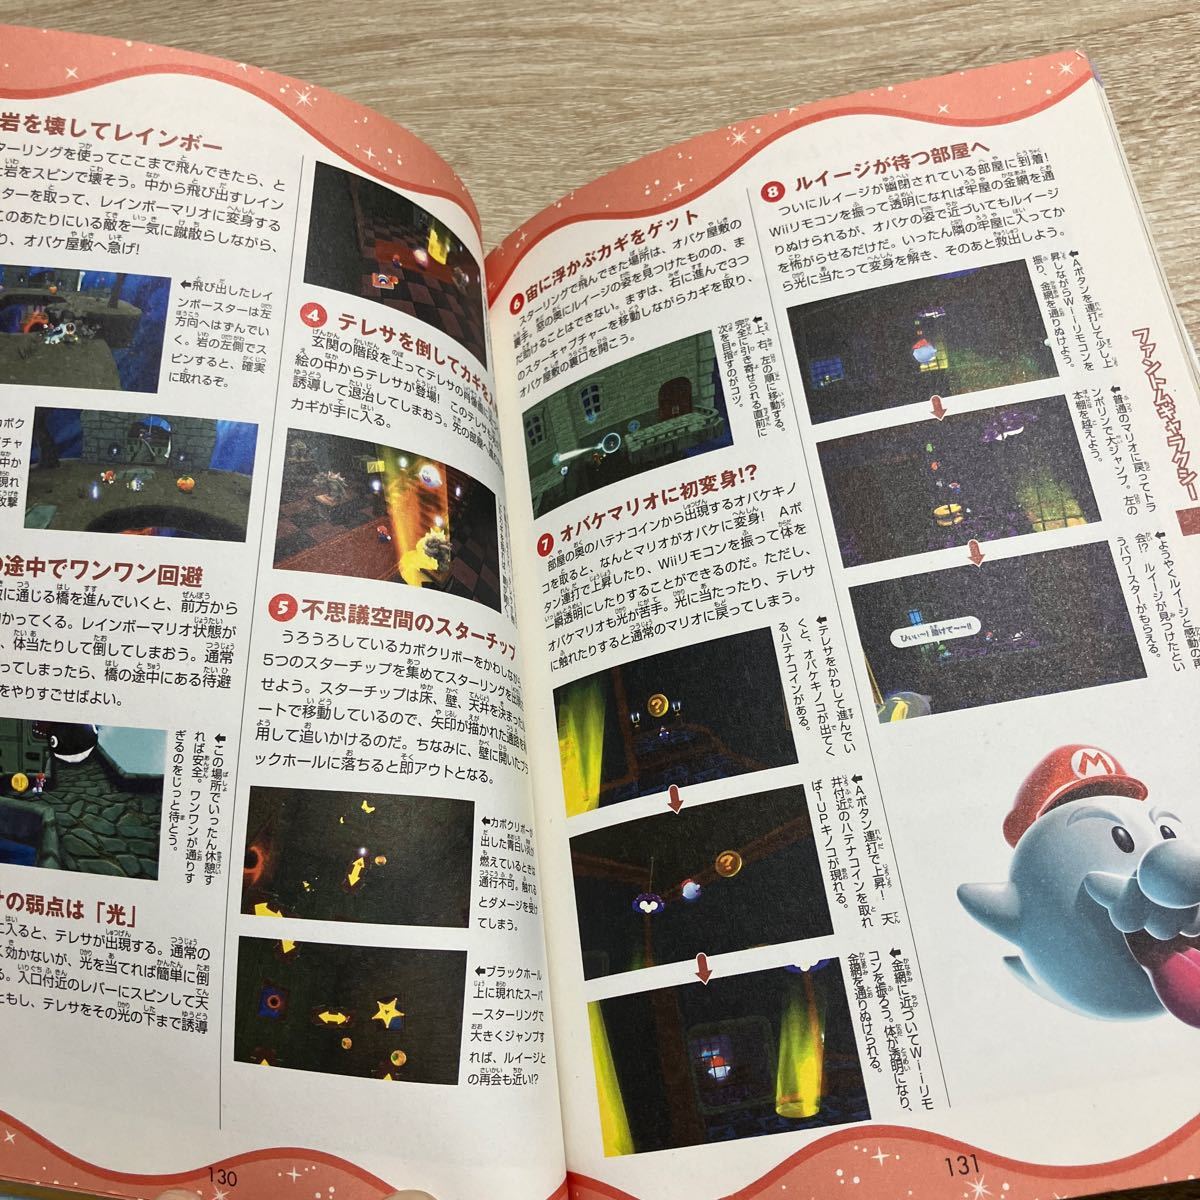 Nintendo ニンテンドー 任天堂 Wii 攻略本 公式ガイドブック スーパーマリオギャラクシー ネコポス発送